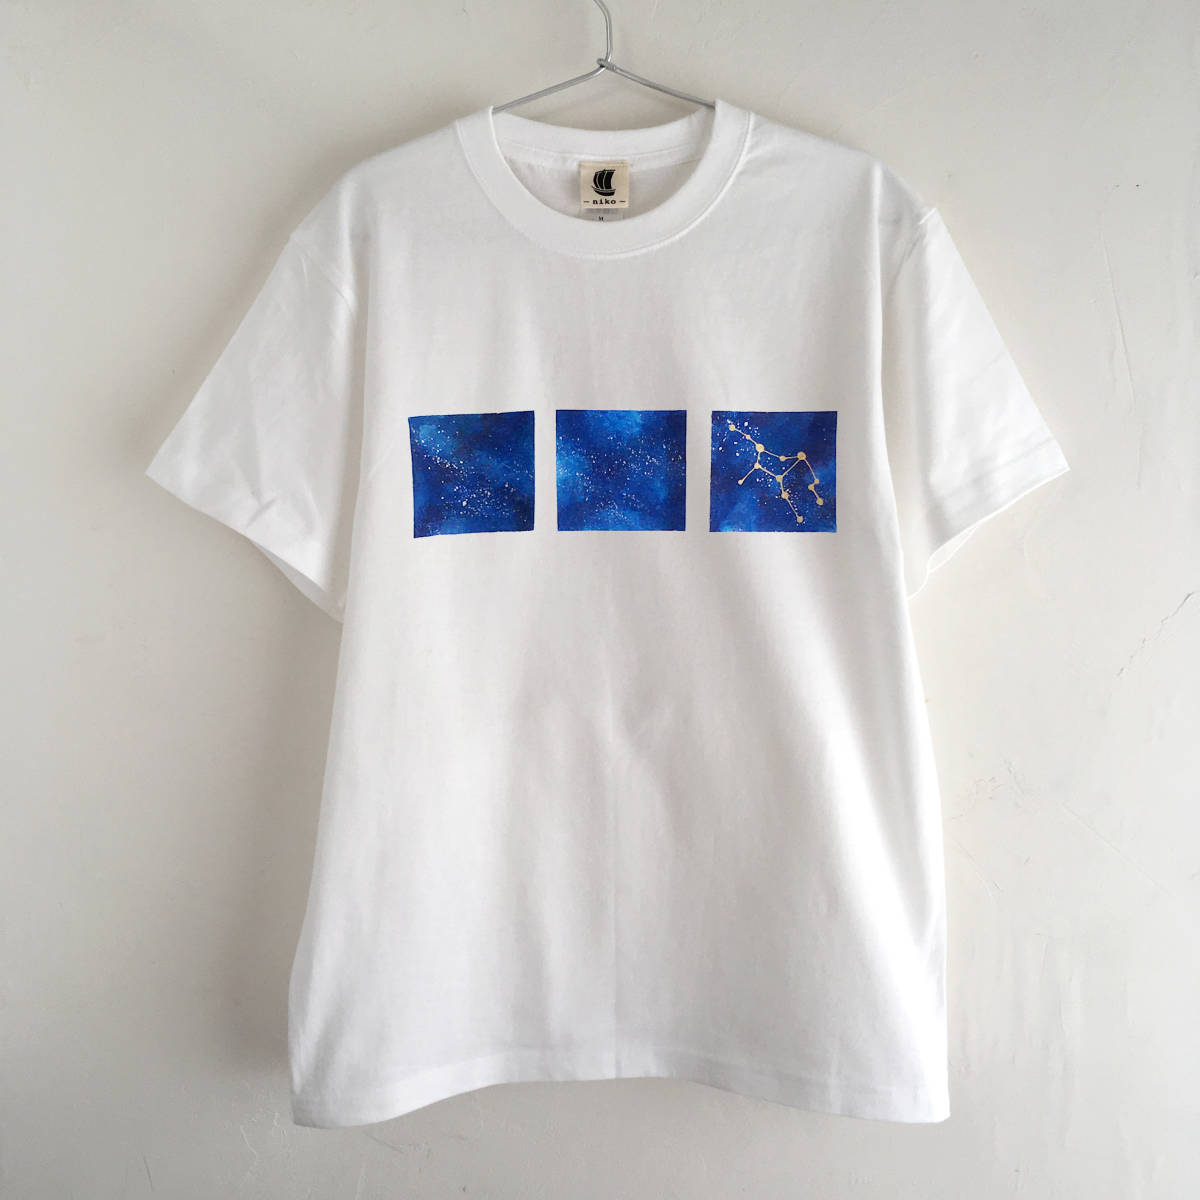 Handgezeichnetes T-Shirt mit Weltraummuster und 12 Sternbildern zur Auswahl, Weiß, Größe L, Galaxis, sternenklarer Himmel, Größe L, Rundhals, gemustert